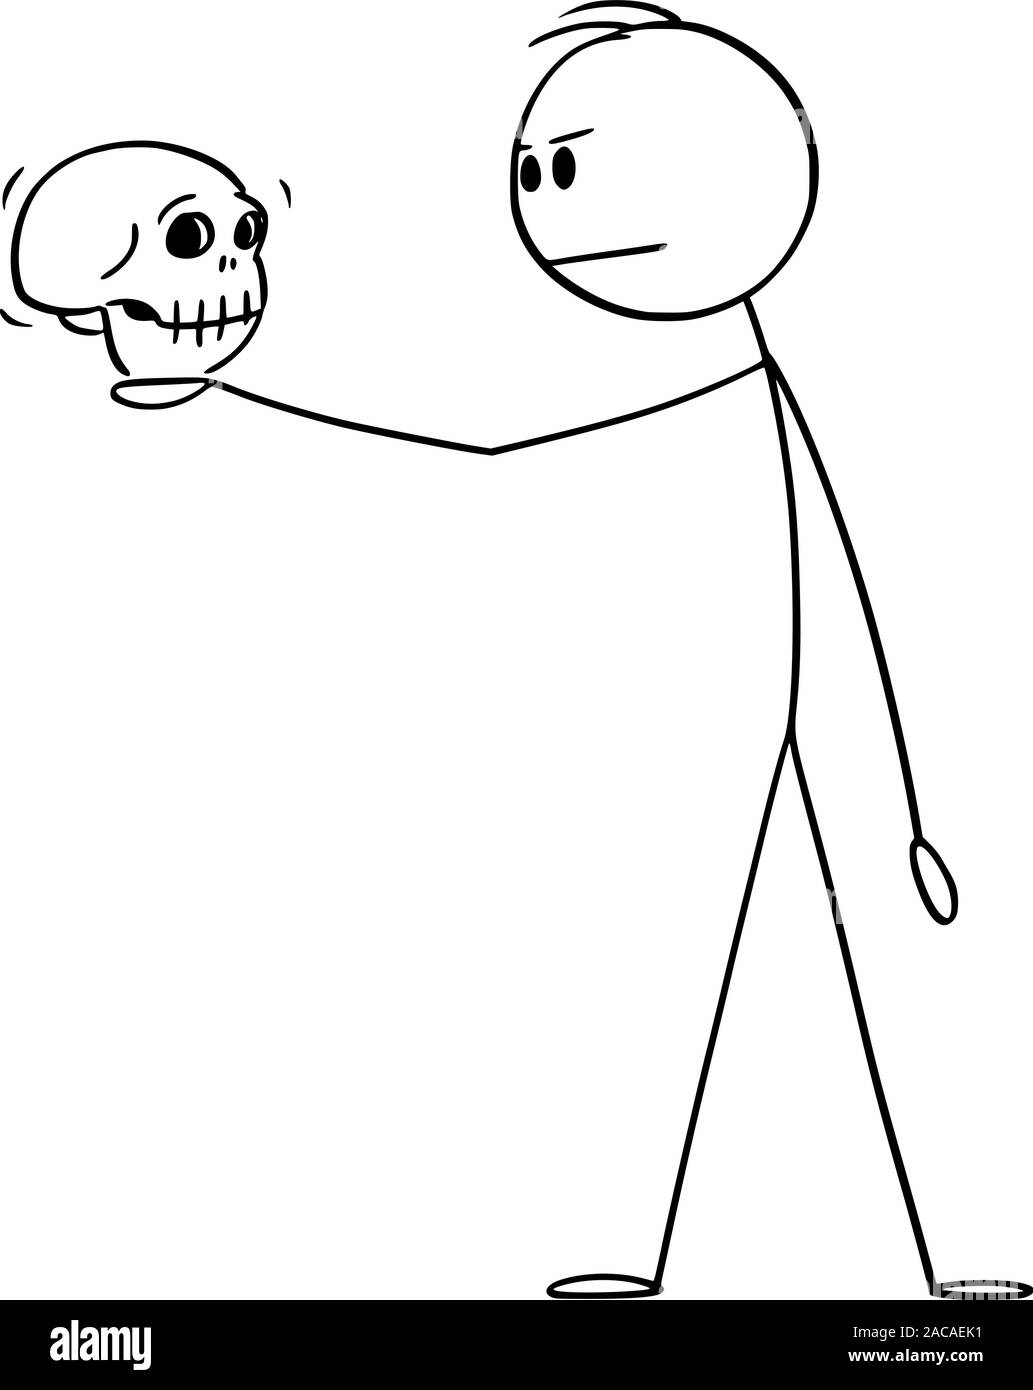 Vector cartoon stick figura disegno illustrazione concettuale dell'uomo in posa drammatica holding teschio umano. Attore la riproduzione di frazione di William Shakespeare tragedia. Illustrazione Vettoriale